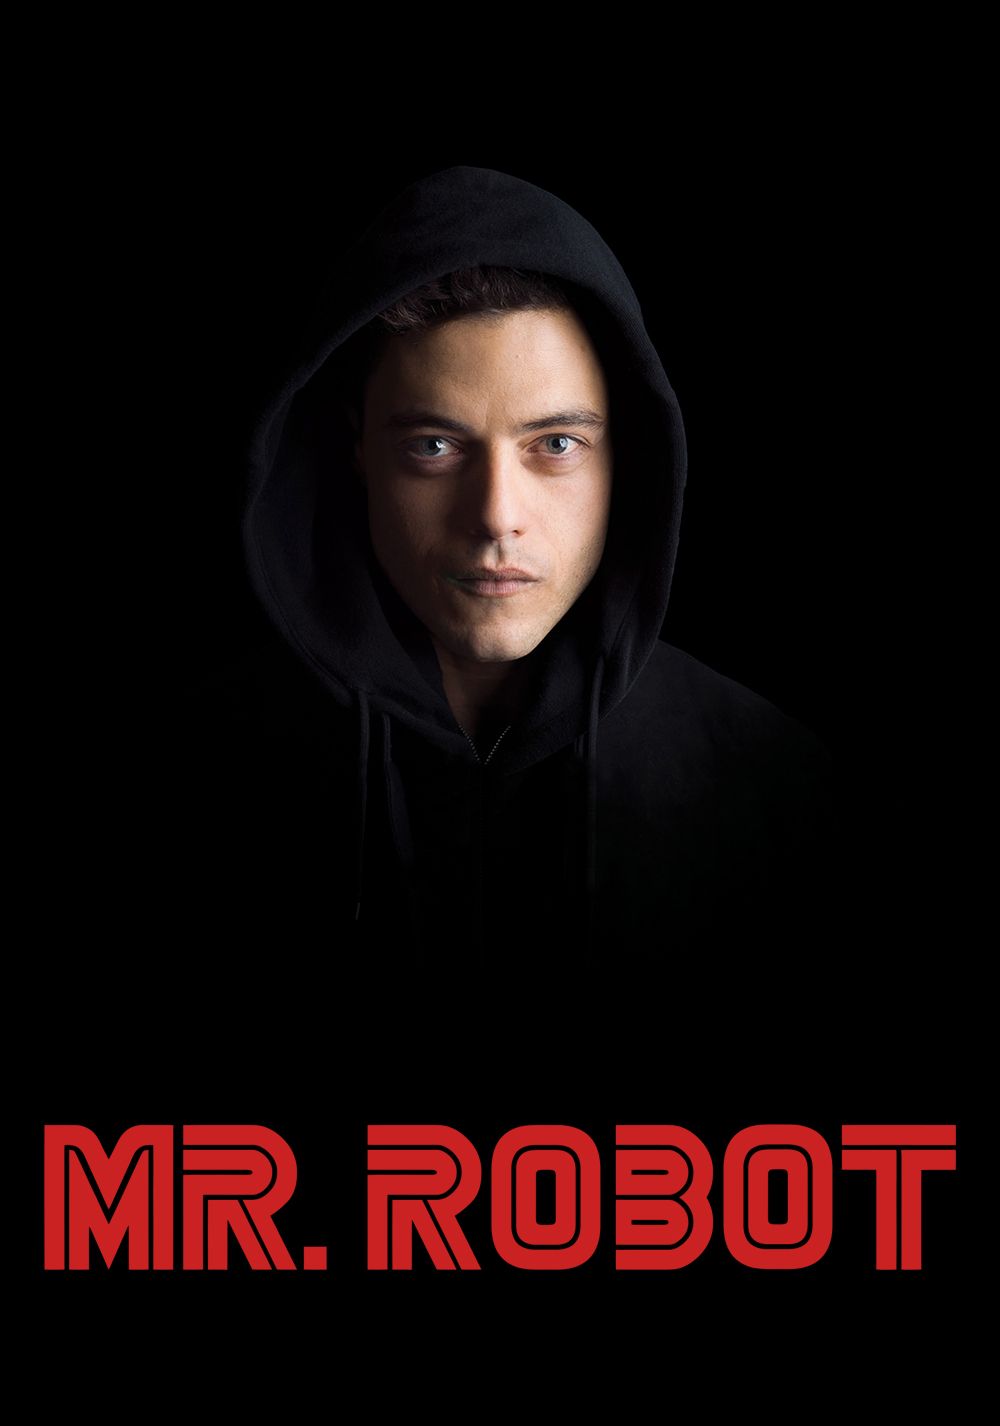 poster da série Mr. Robot